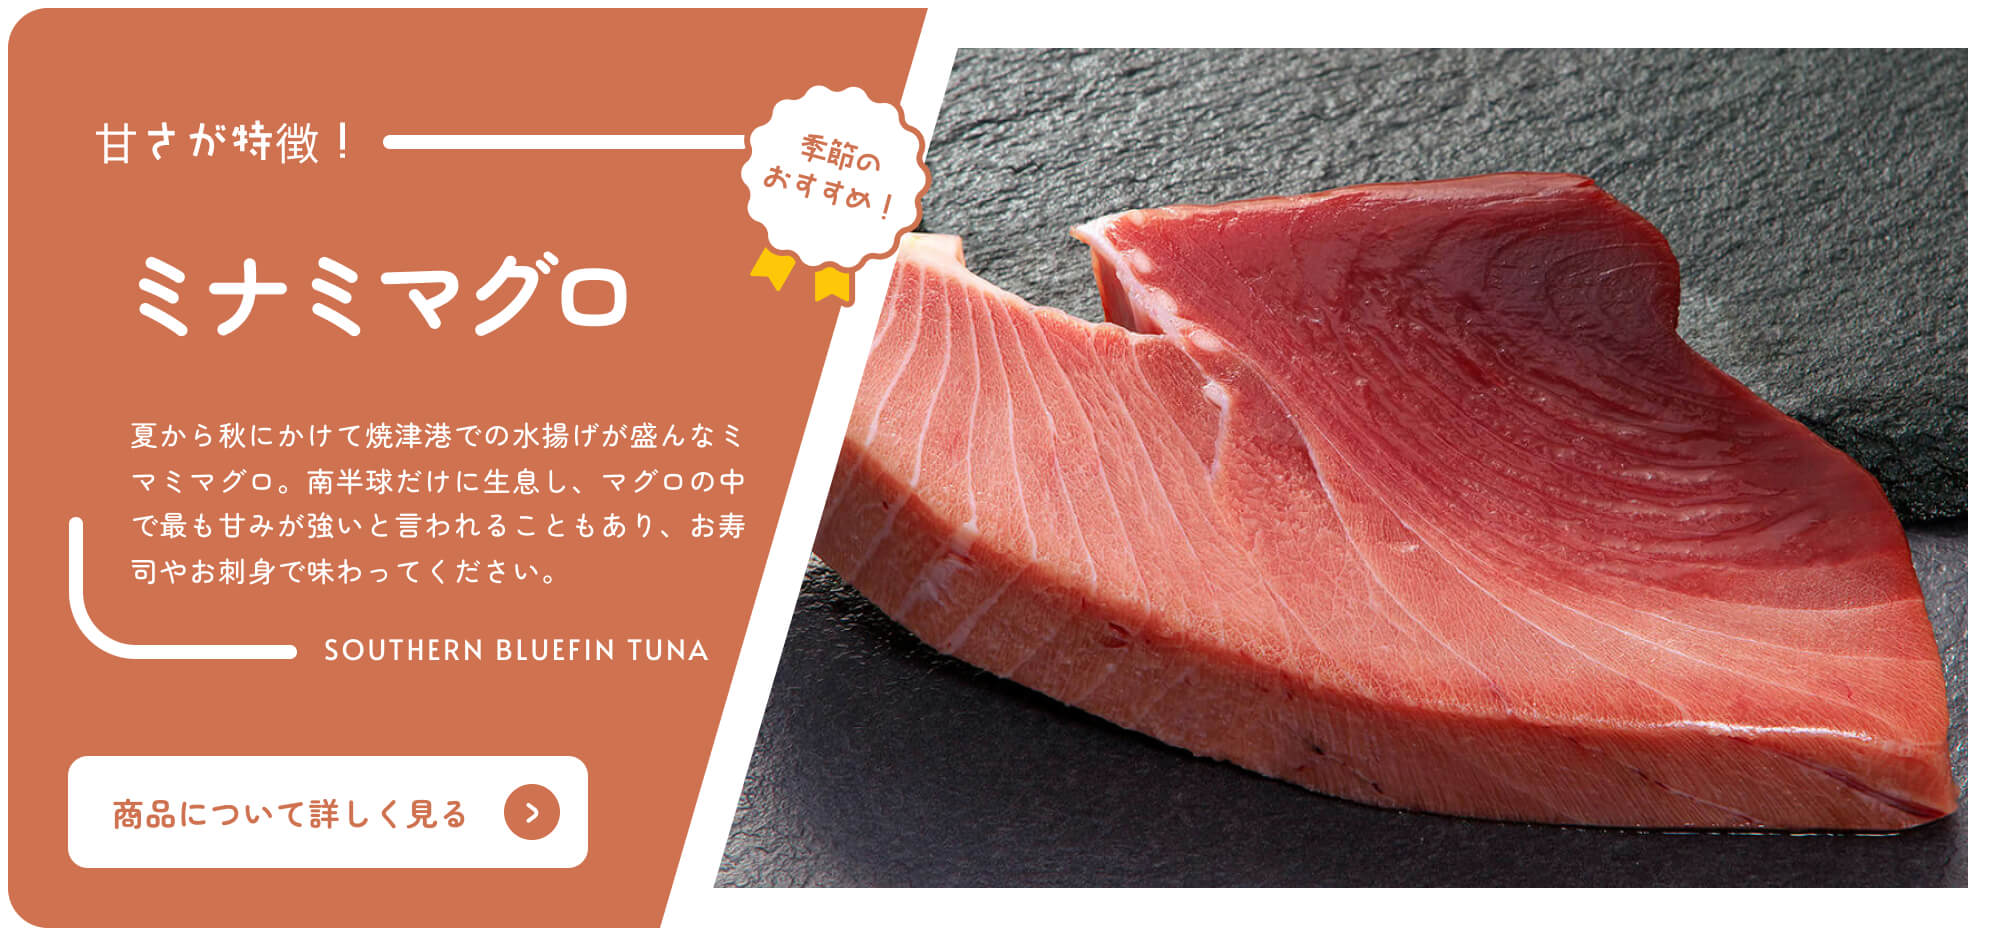 購買靜岡在線目錄 季節性推薦的南方藍鰭金槍魚